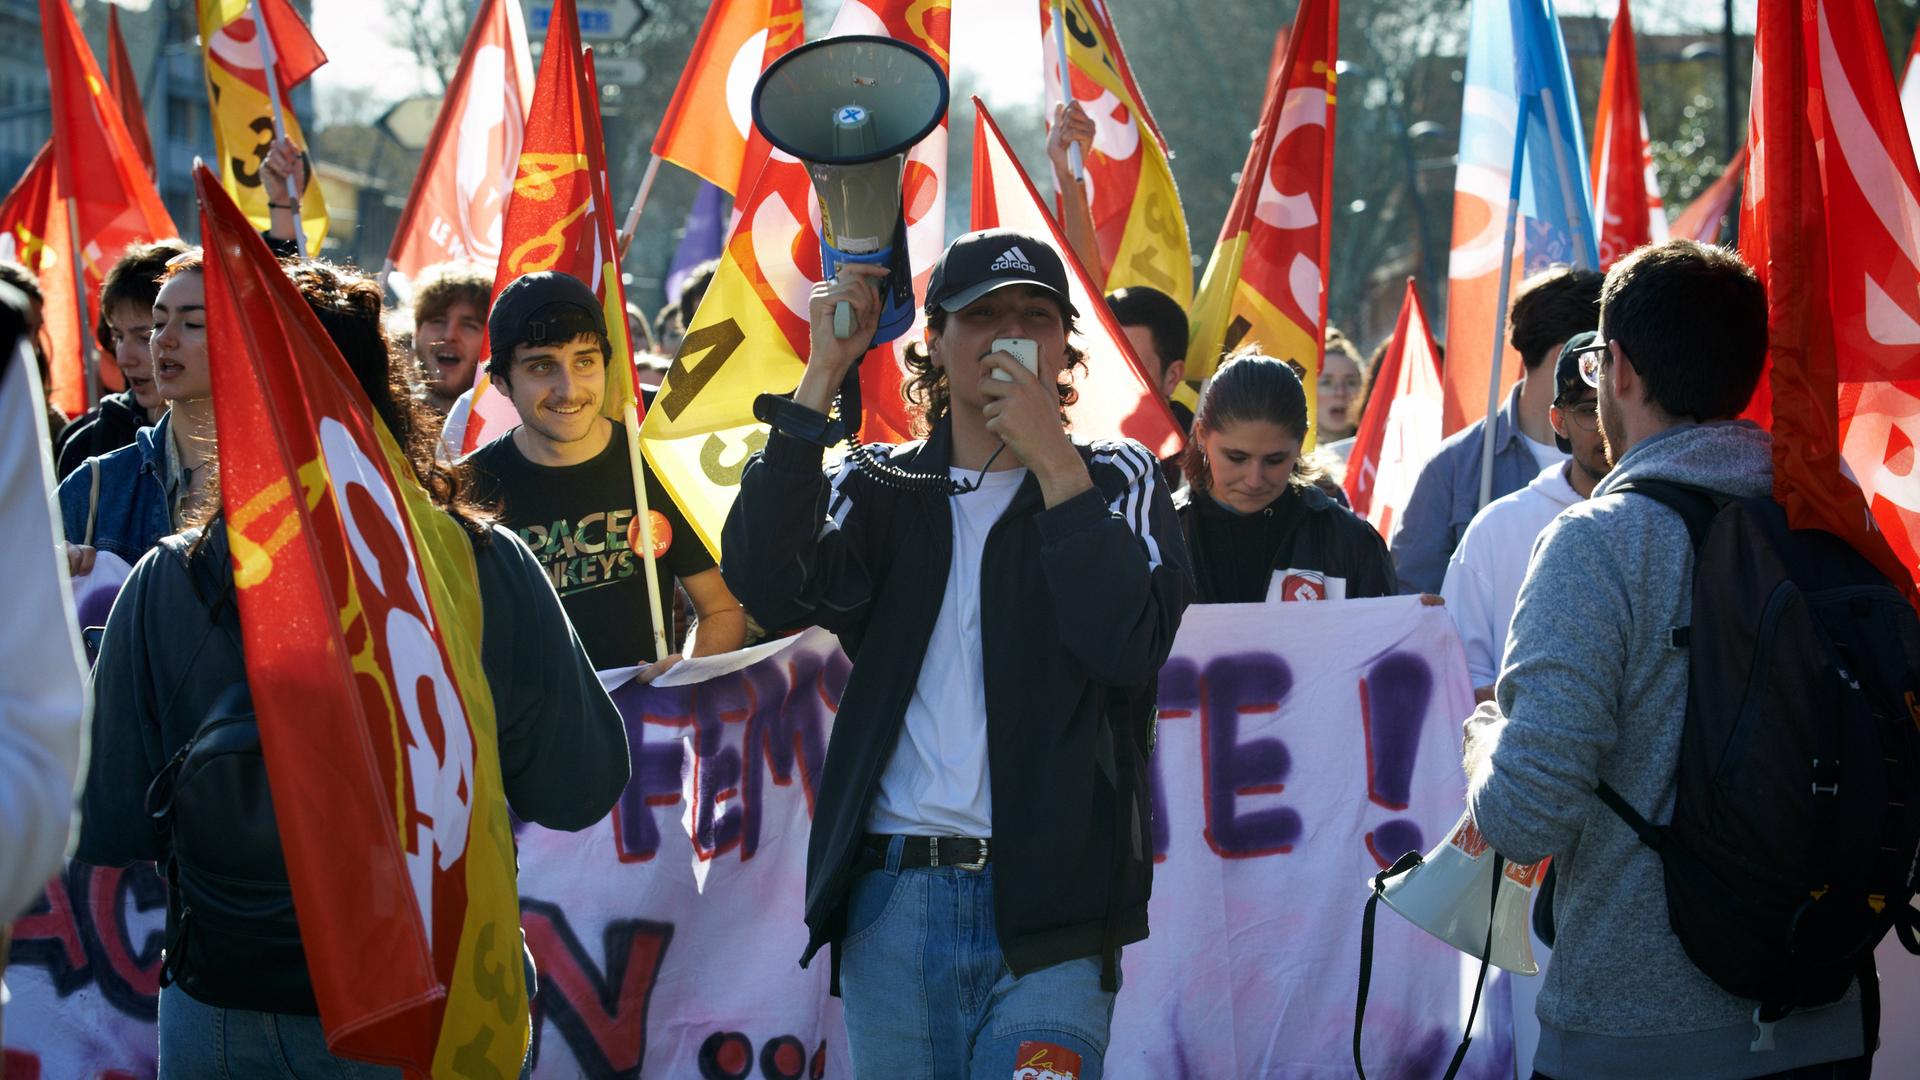 Proteste gegen Rentenreform - Französische Gewerkschaft will Raffinerien runterfahren - erneute Zusammenstöße in Paris